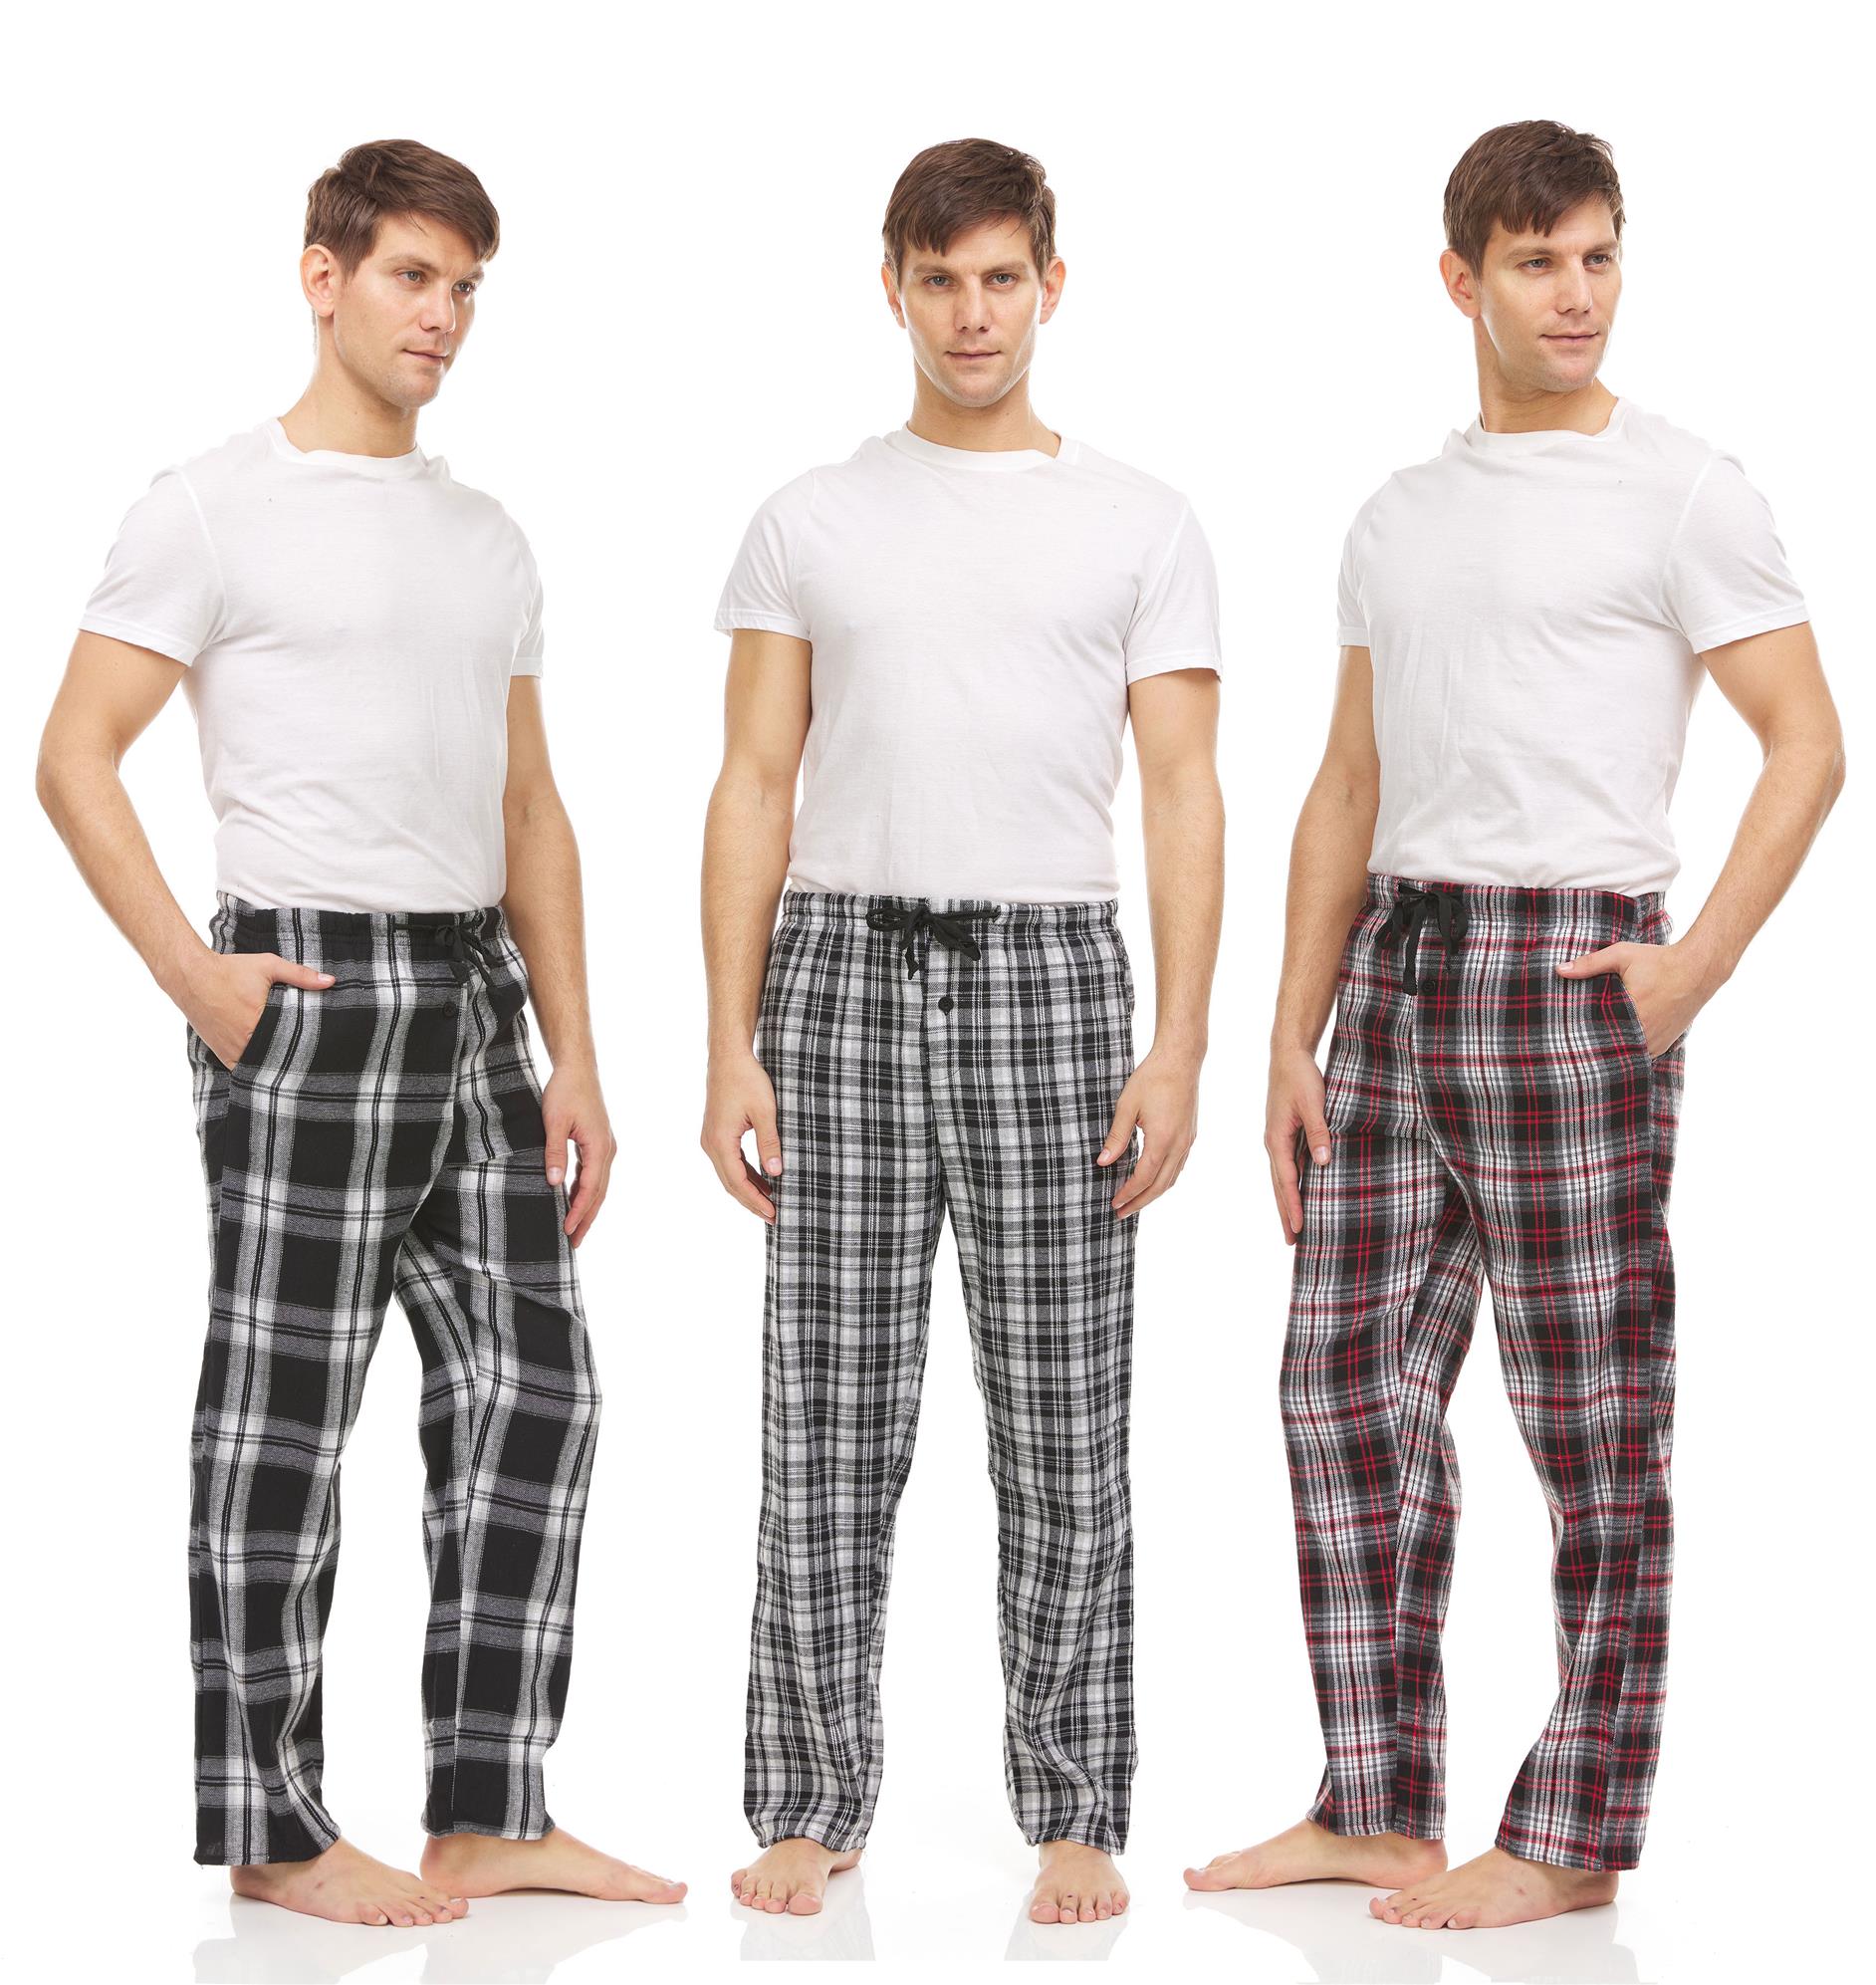 DARESAY Men's Cotton Super-Soft Flannel Plaid Pajama Pants/Lounge ...